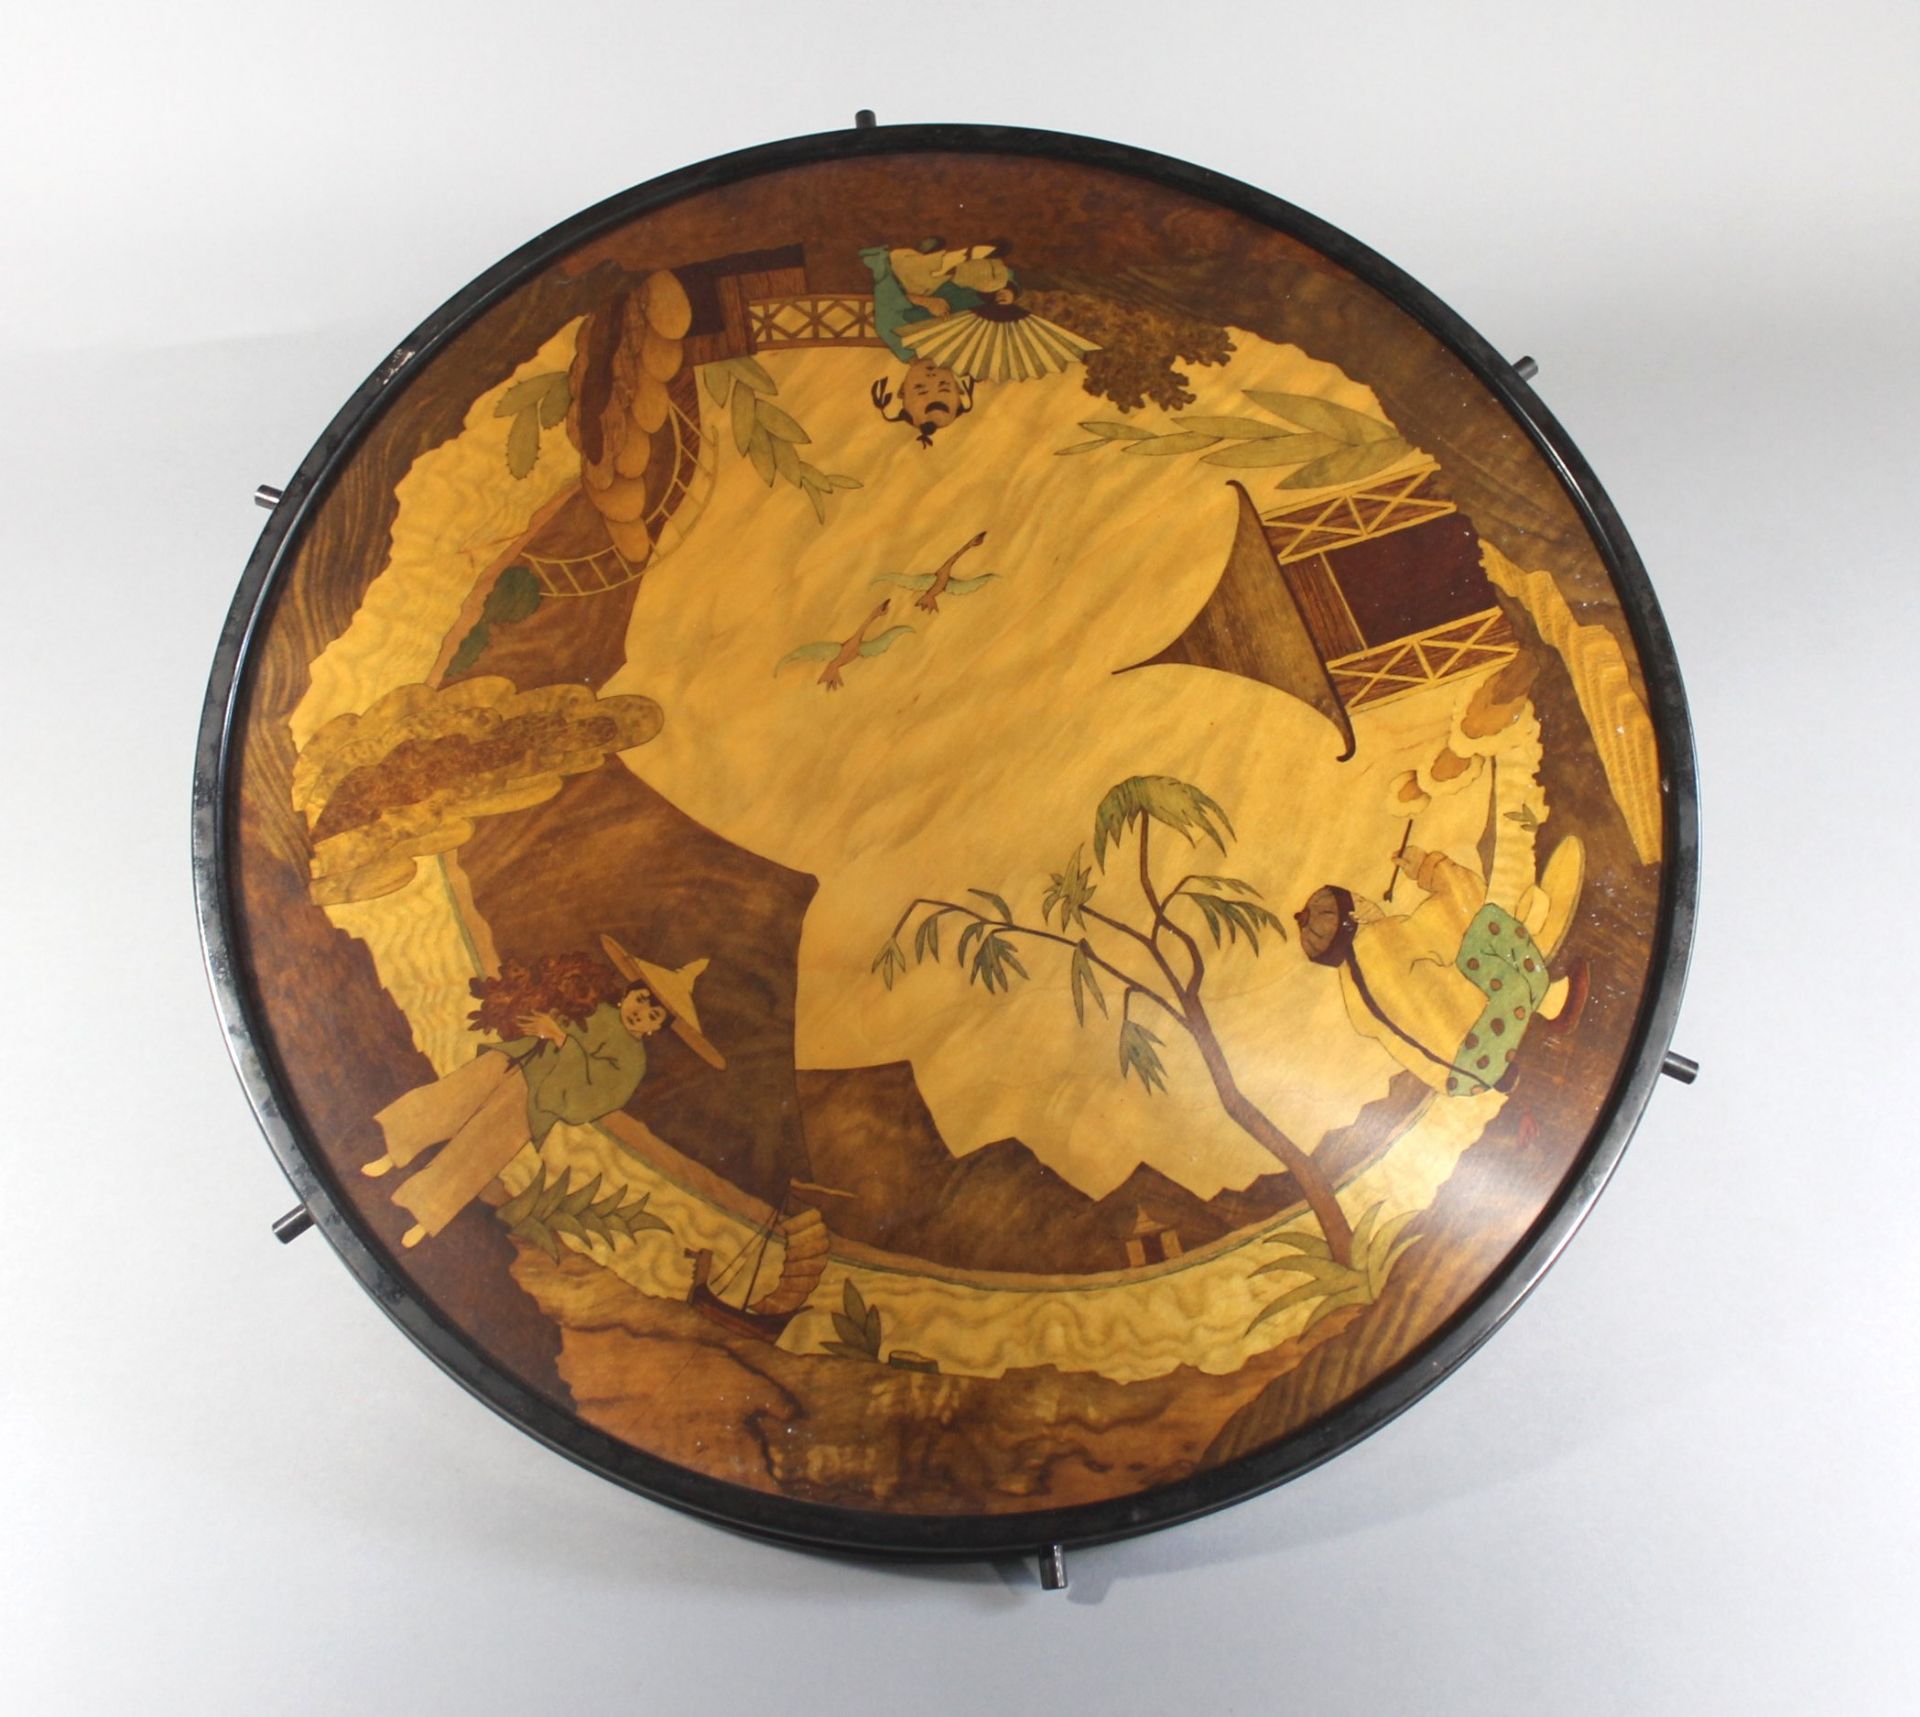 1 große runde Dreh-Platte Holz/Metall, auf Fuß, mit gemalten asiatischen Alltagszenen, hinter